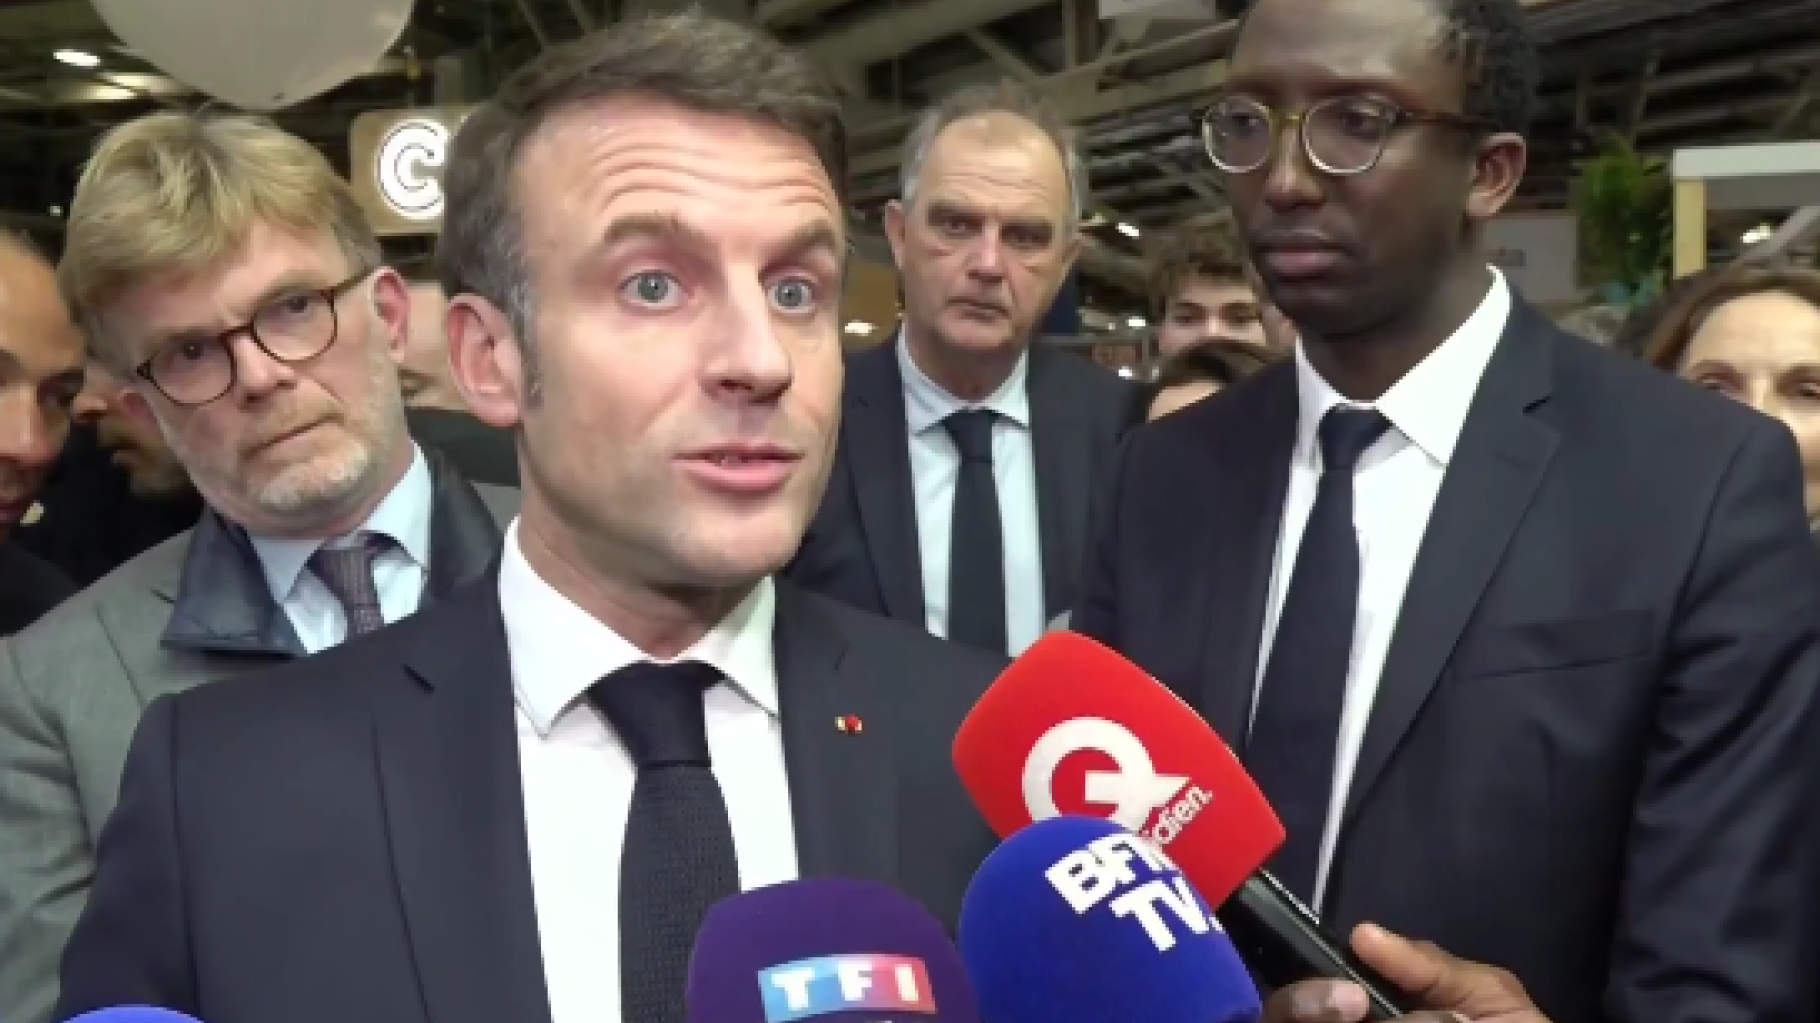 En quittant le Salon de l’agriculture, Macron tacle le RN et ses « craques »